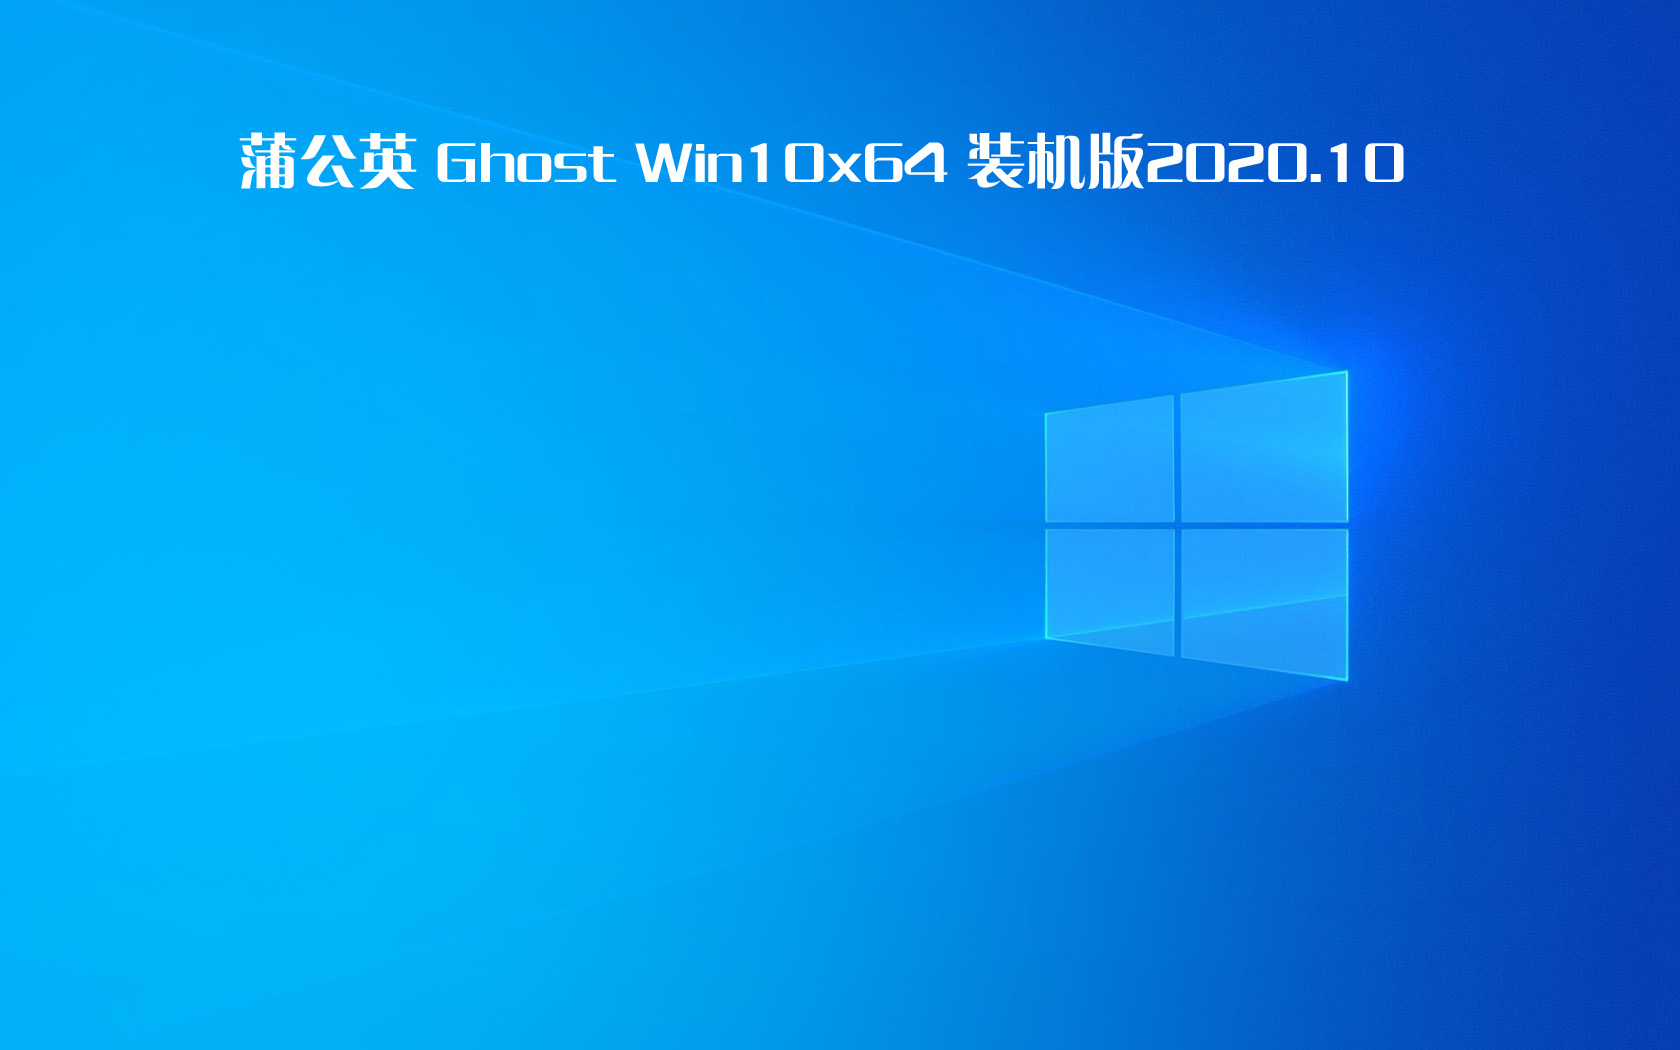 蒲公英 Ghost Win10 x64纯净版 v2020.10